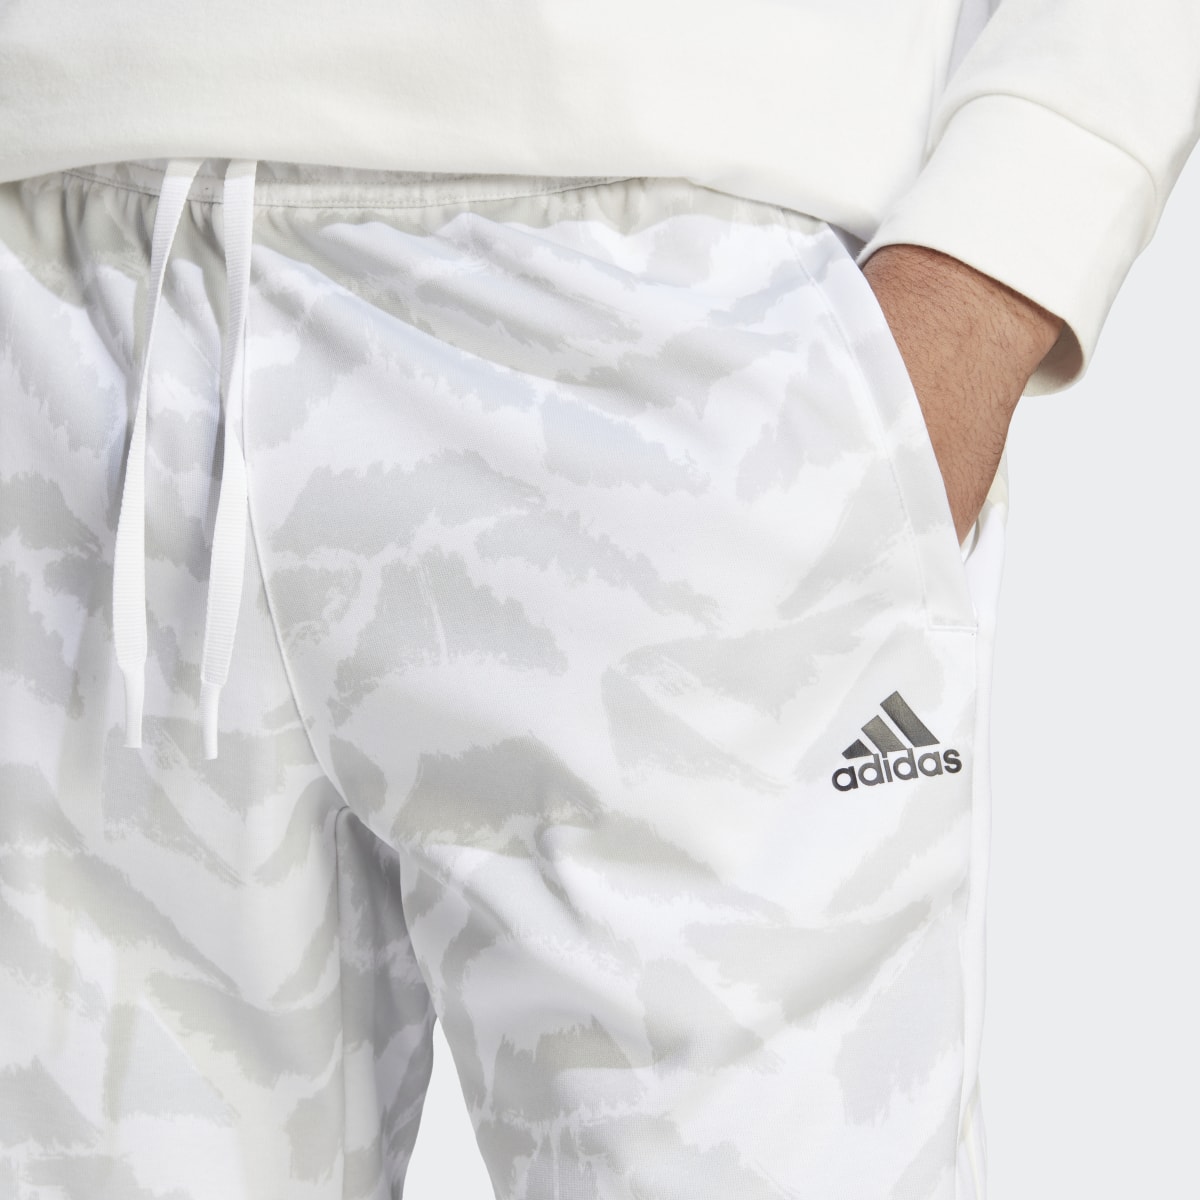 Adidas Tiro Suit-Up Lifestyle Joggers. 5